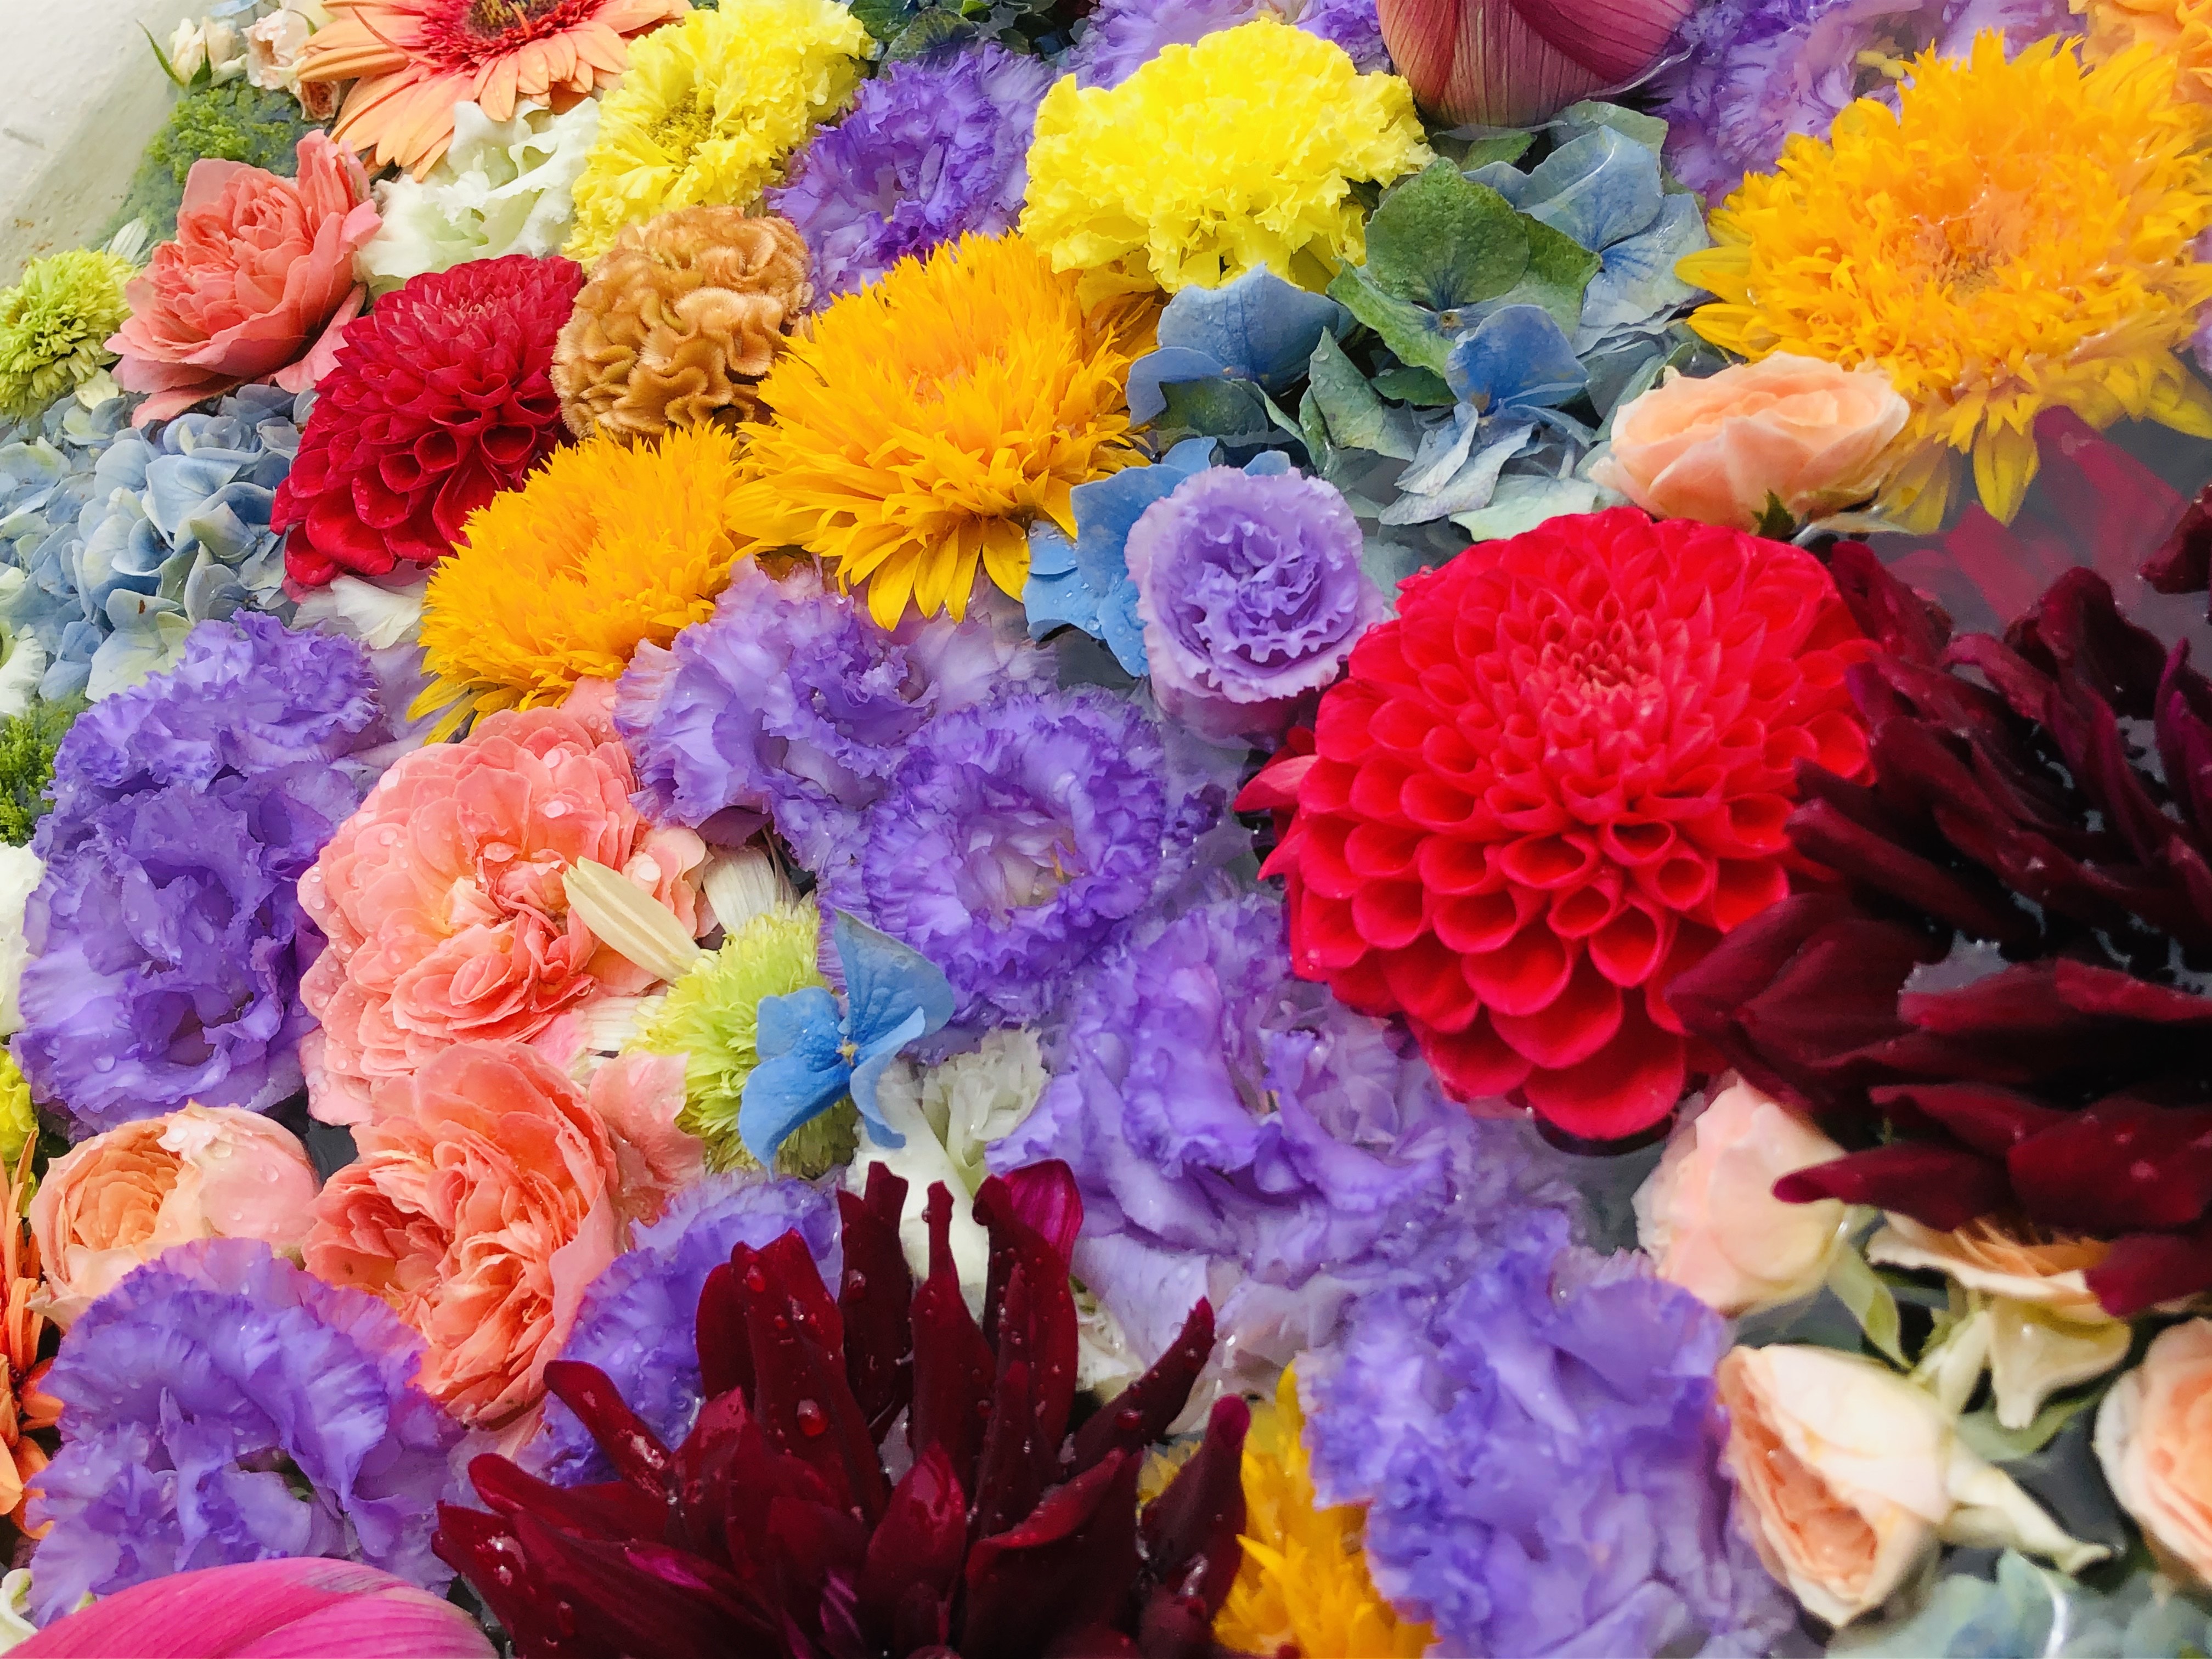 最明寺に花手水が飾られております 最明寺からのお知らせ